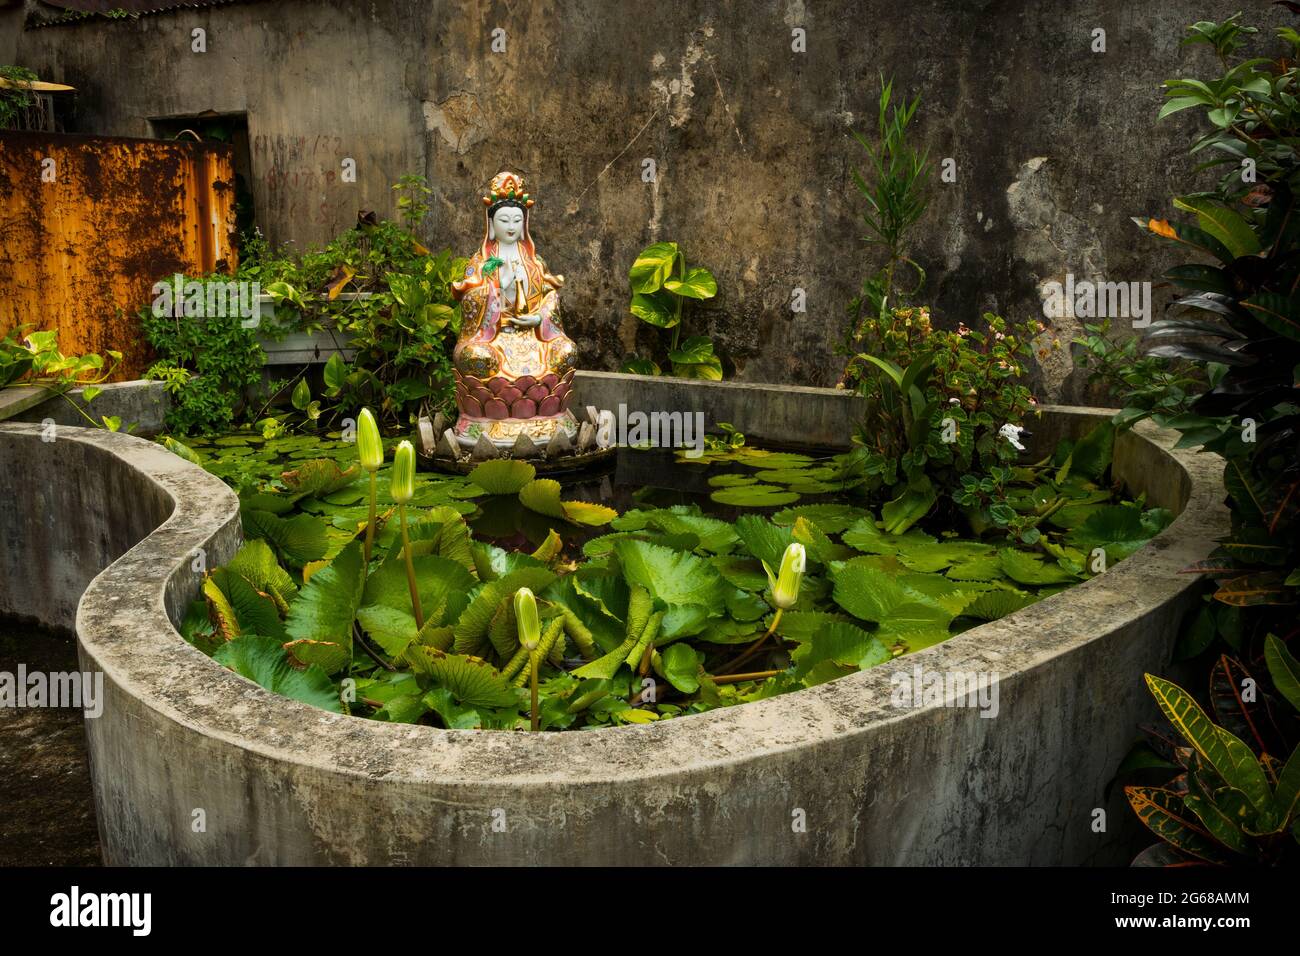 Un étang en béton fait maison avec du lotus et une statuette de Guan Yin, la déesse taoïste de Mercy, à Luk Keng, New Territories, Hong Kong Banque D'Images